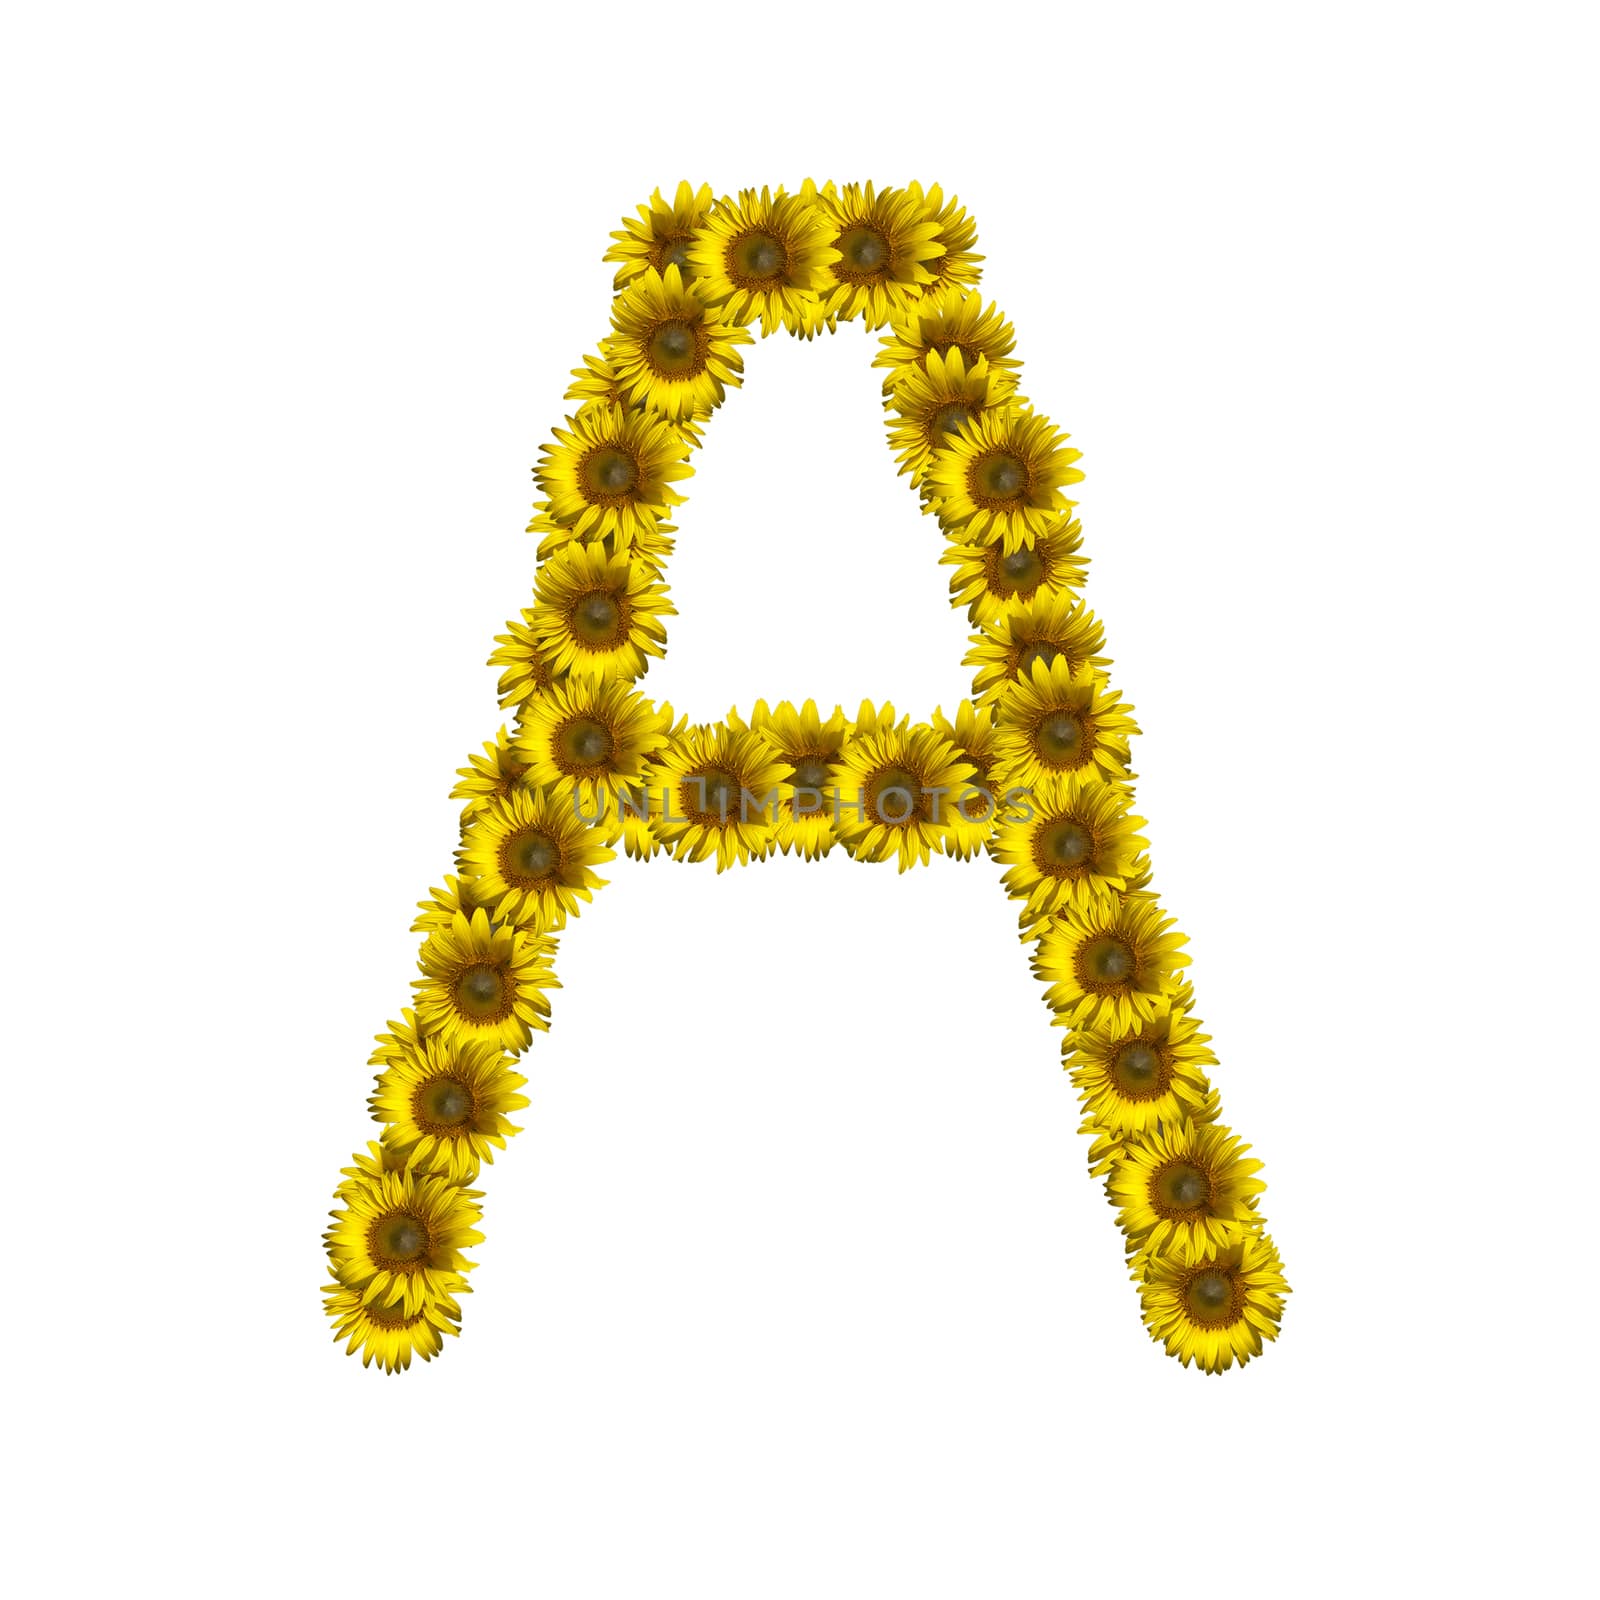 Isolated sunflower alphabet A by Exsodus